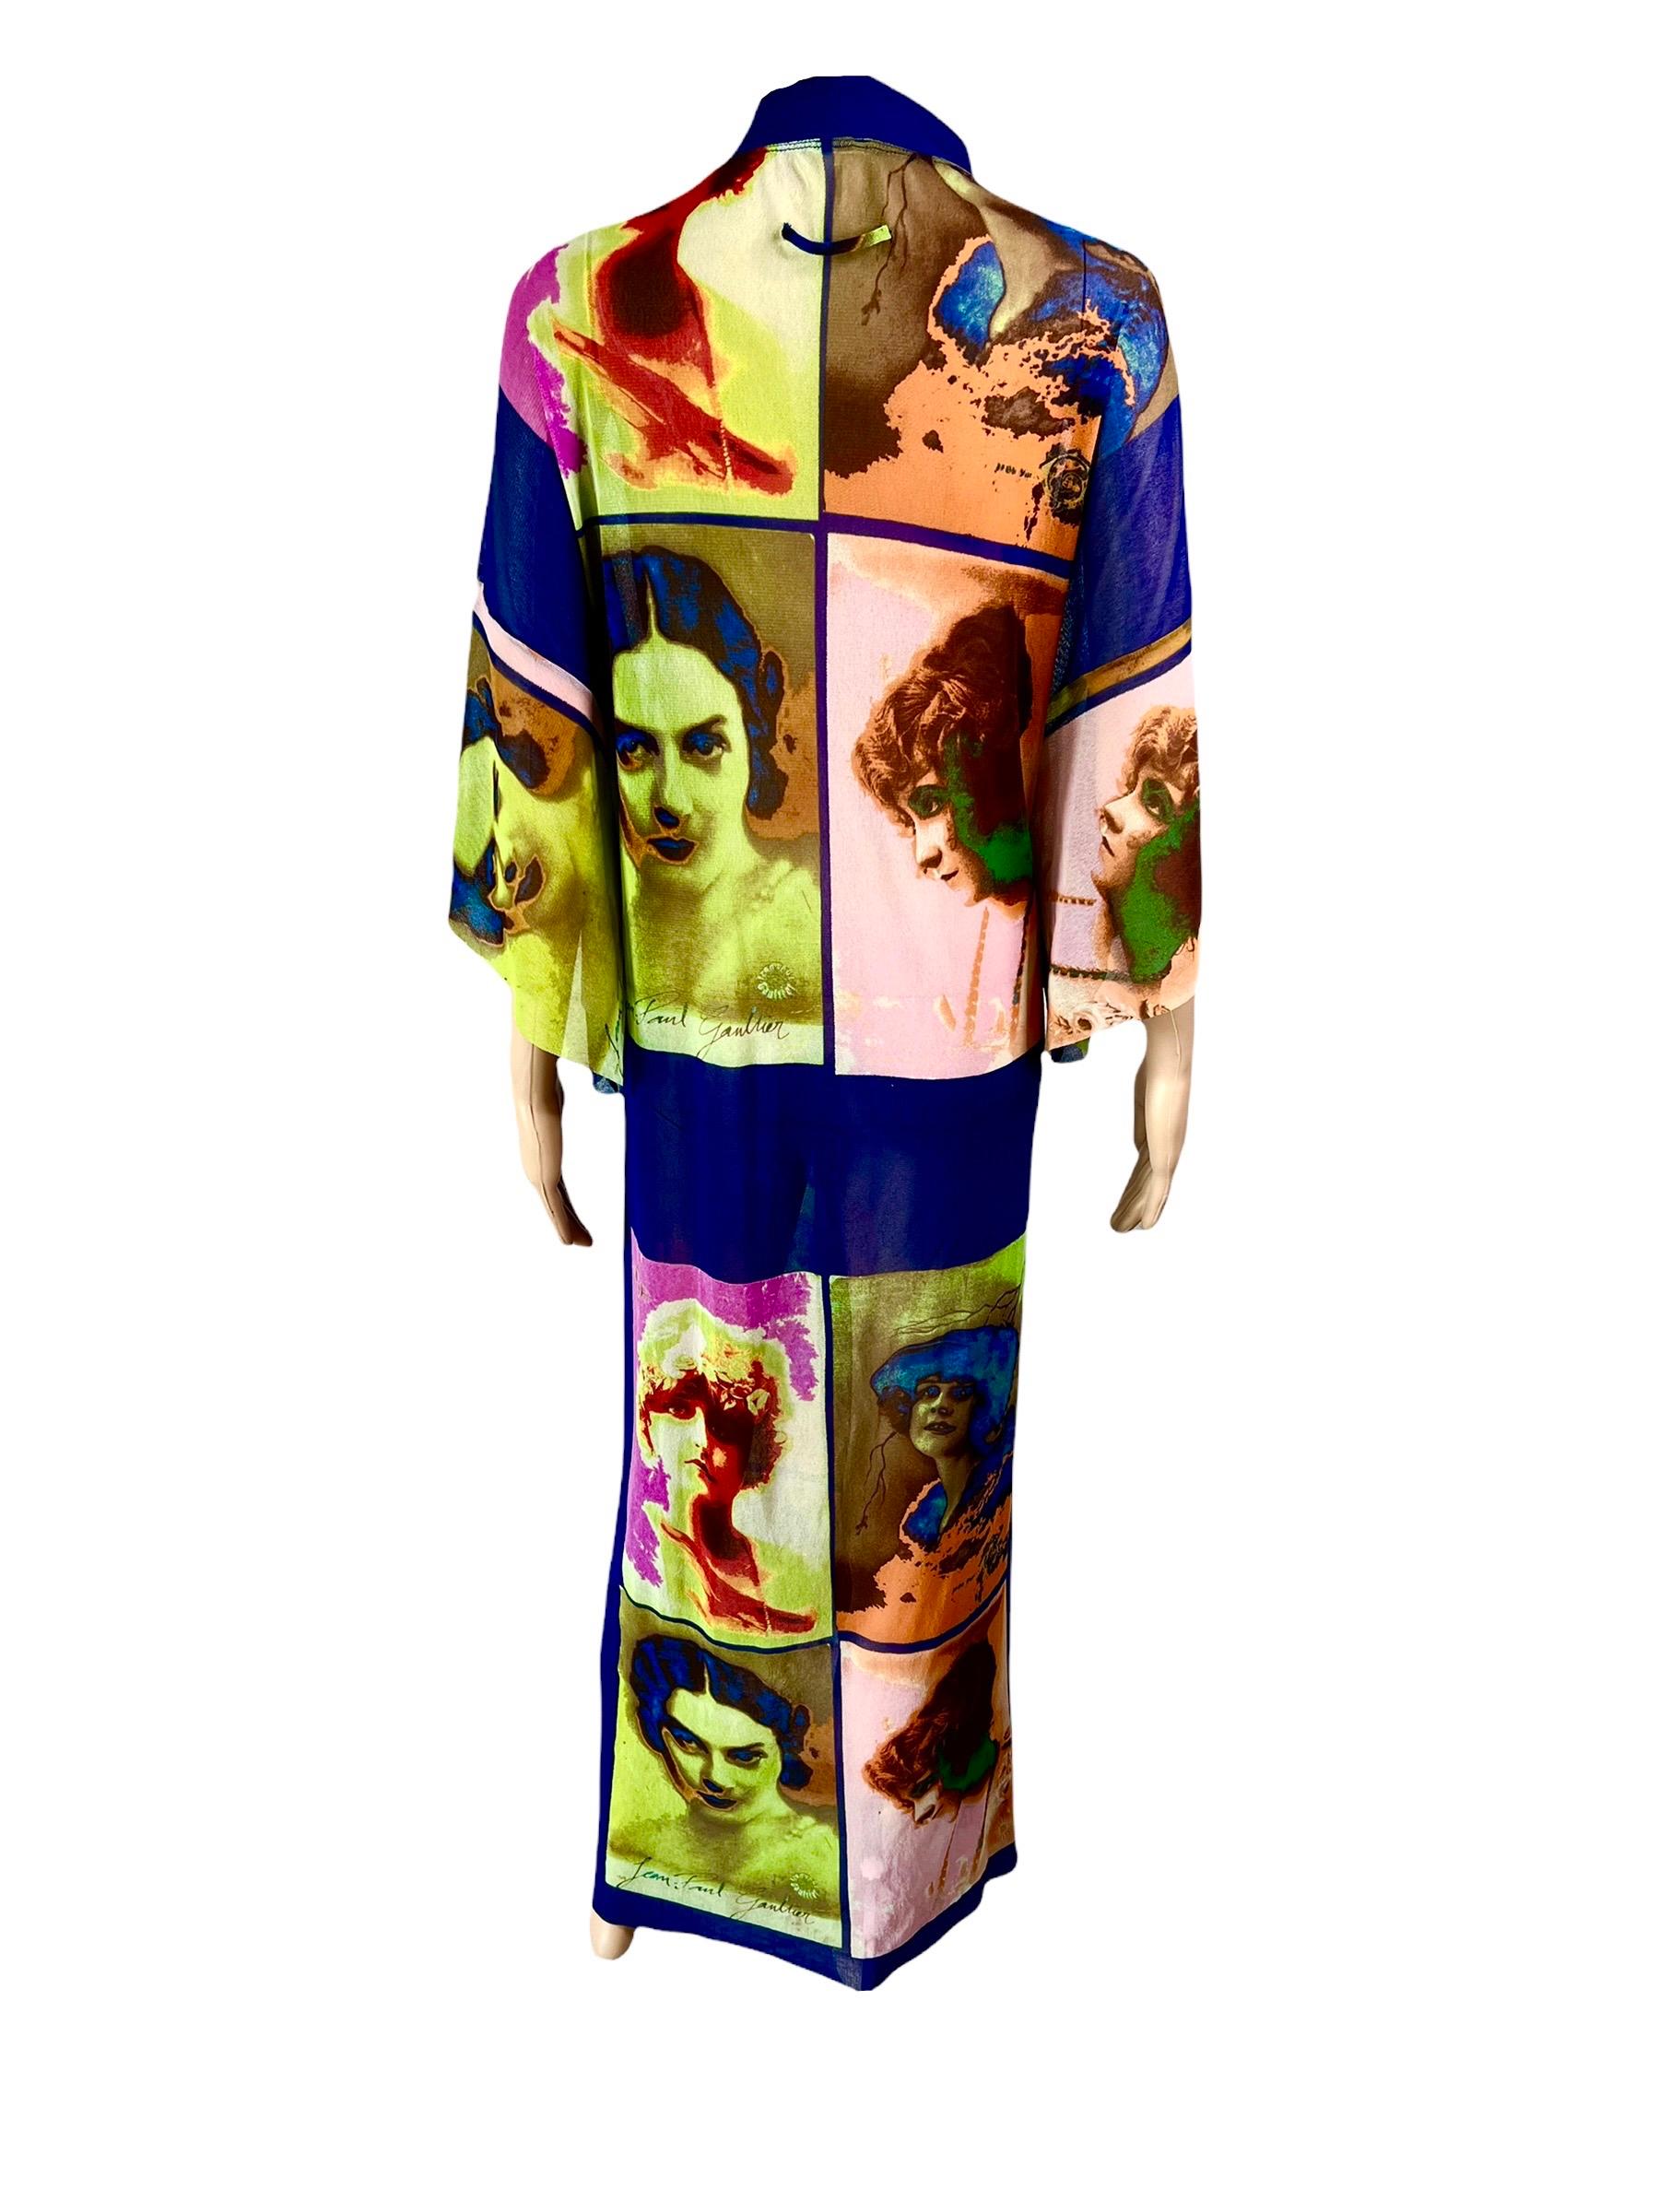 Jean Paul Gaultier Soleil S/S 2002 Vintage “Portraits” Mesh Maxi Dress Kimono For Sale 2